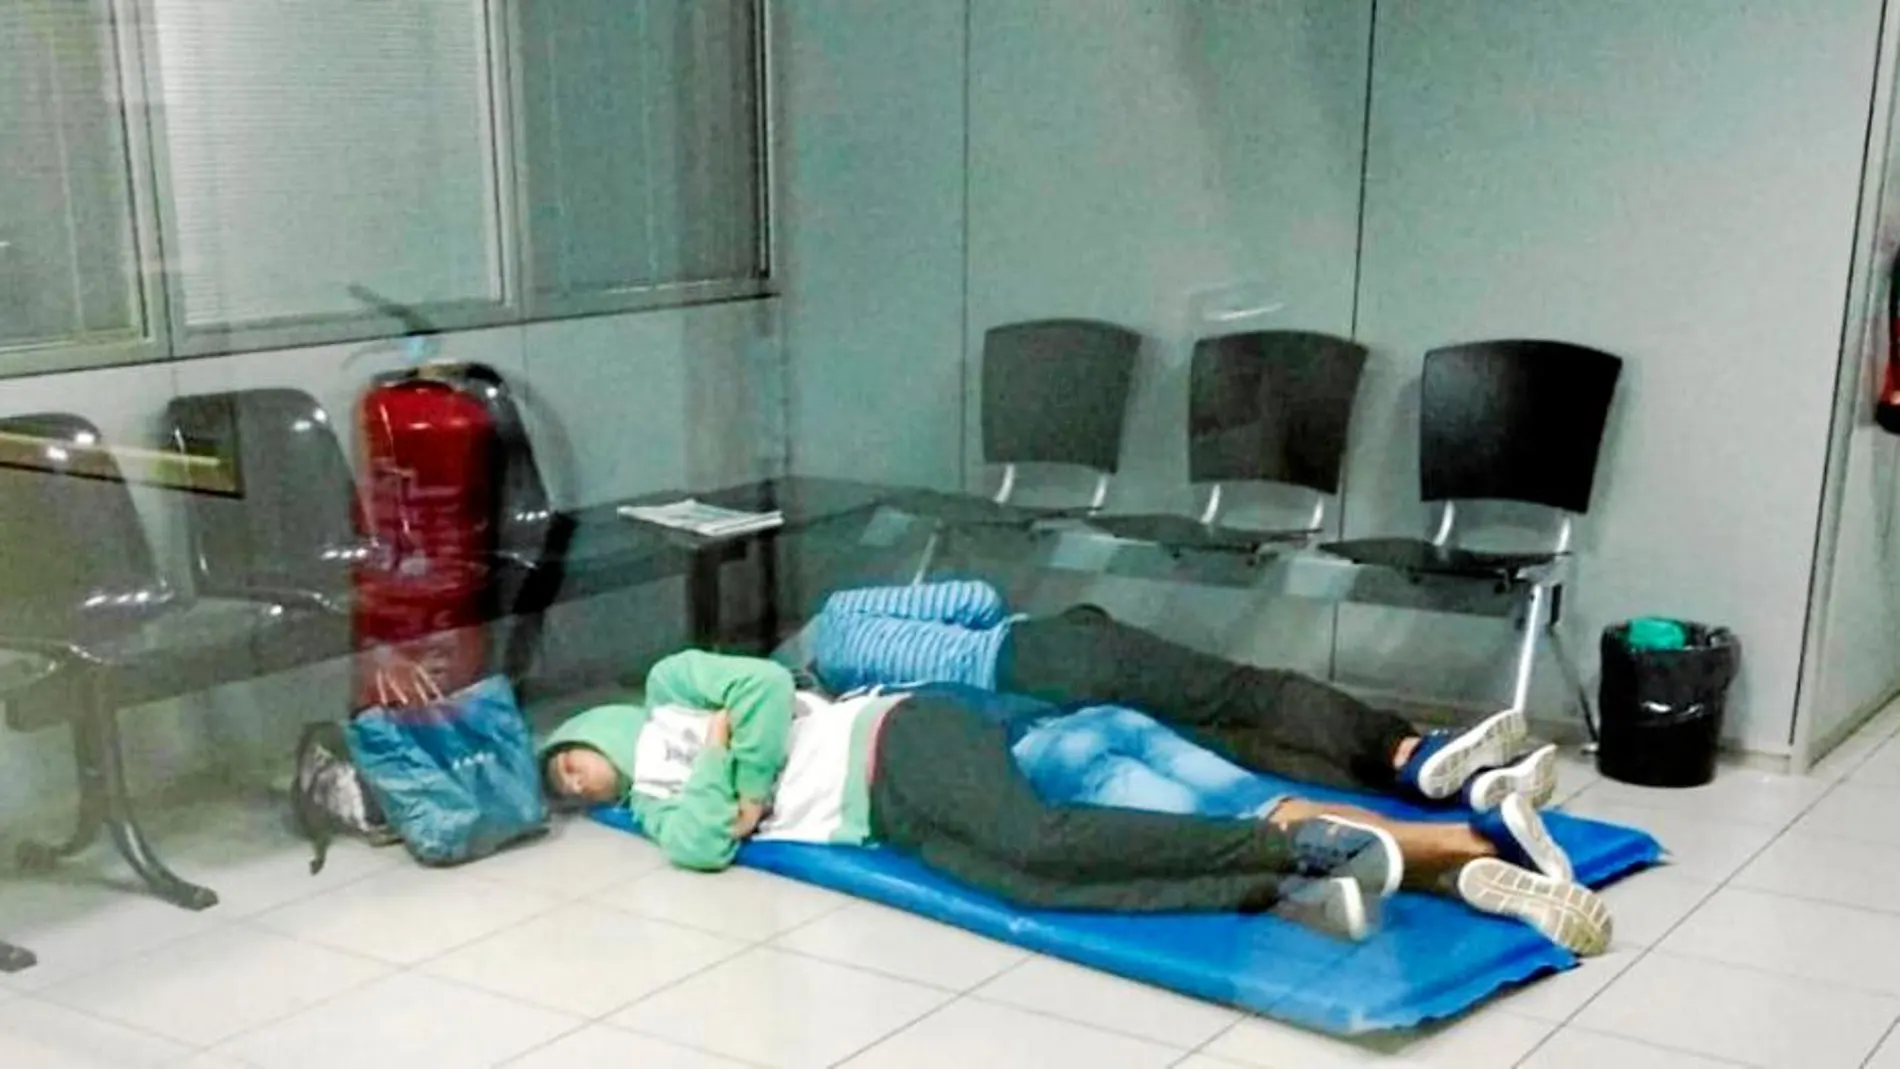 Una imagen demasiado presente en los últimos meses en algunas de las comisarías de los Mossos, con menores no acompañados durmiendo en el suelo